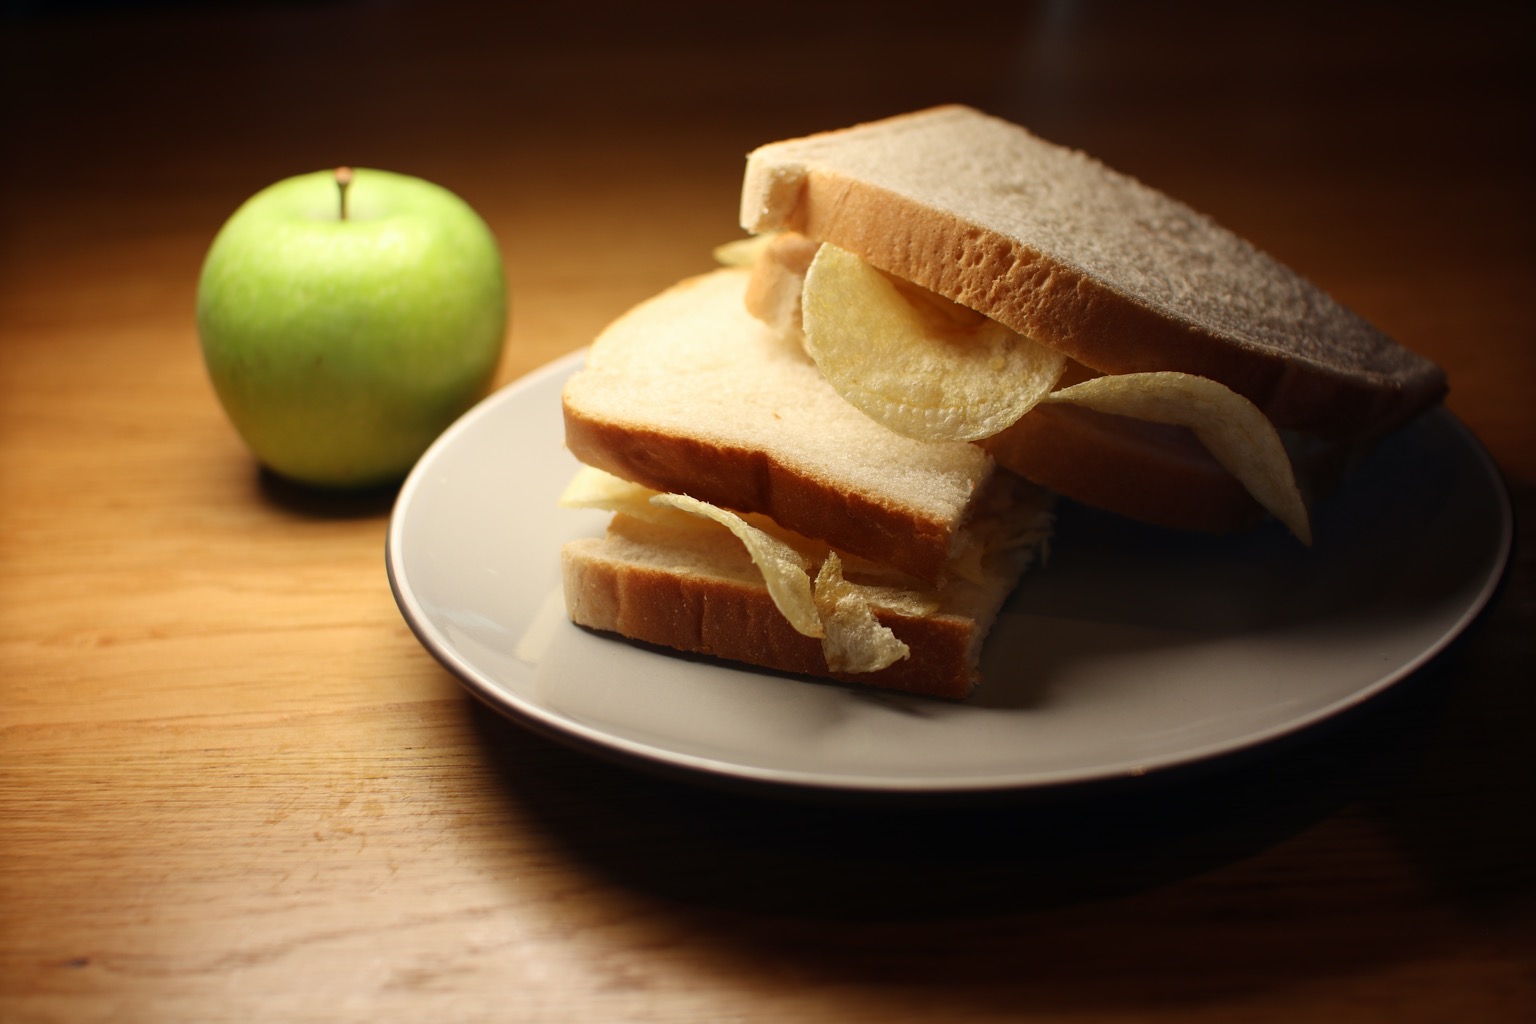 White crisp sandwich cut in half alongside an apple